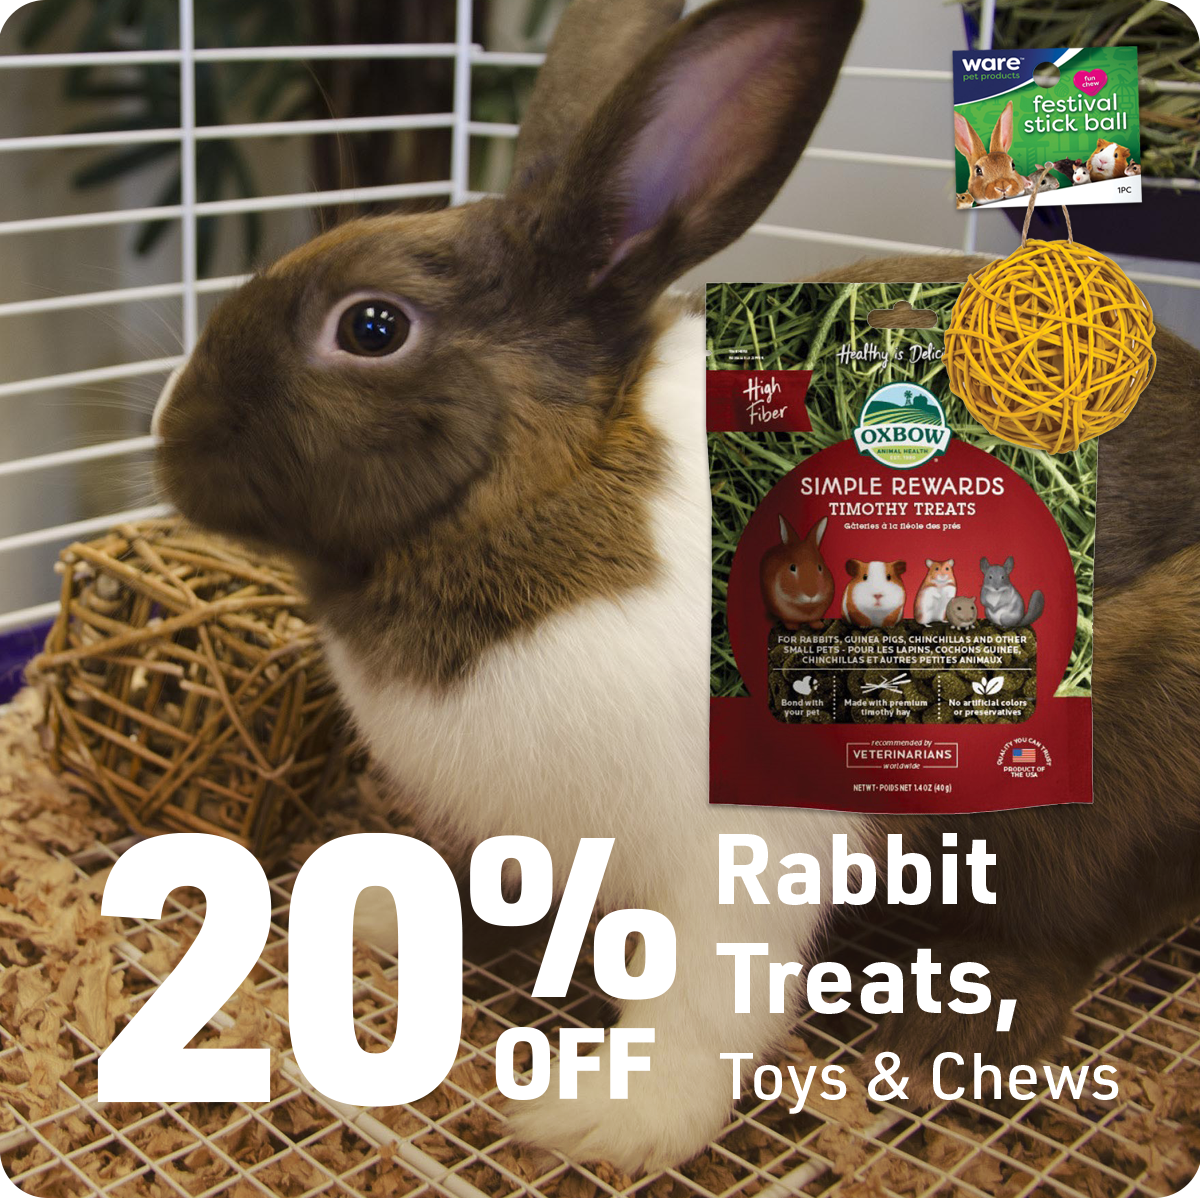 Rabbit Treats, Toys & Chews